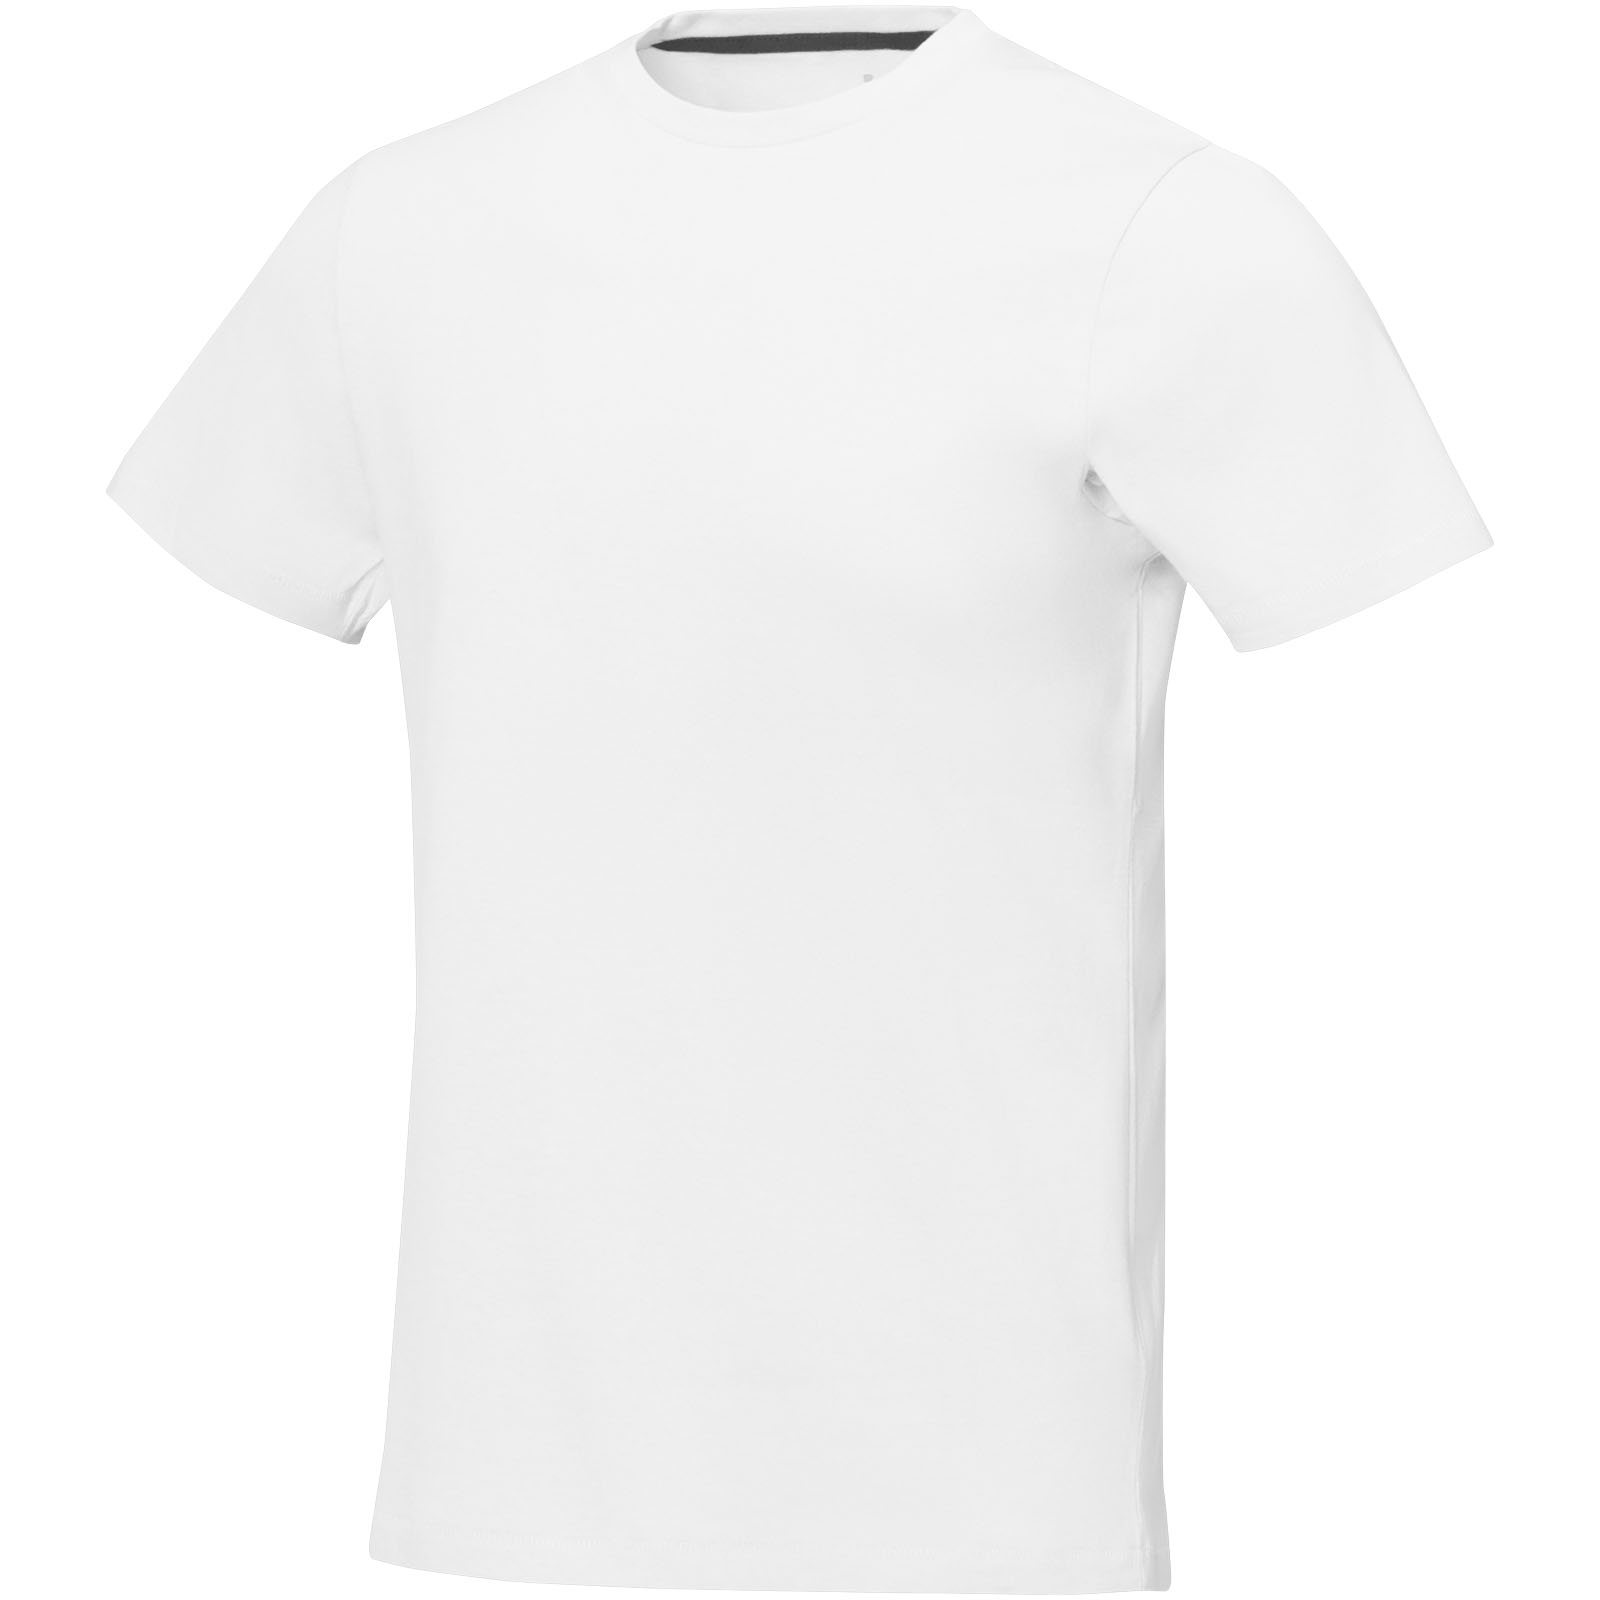 T-shirts - Nanaimo short sleeve men's t-shirt